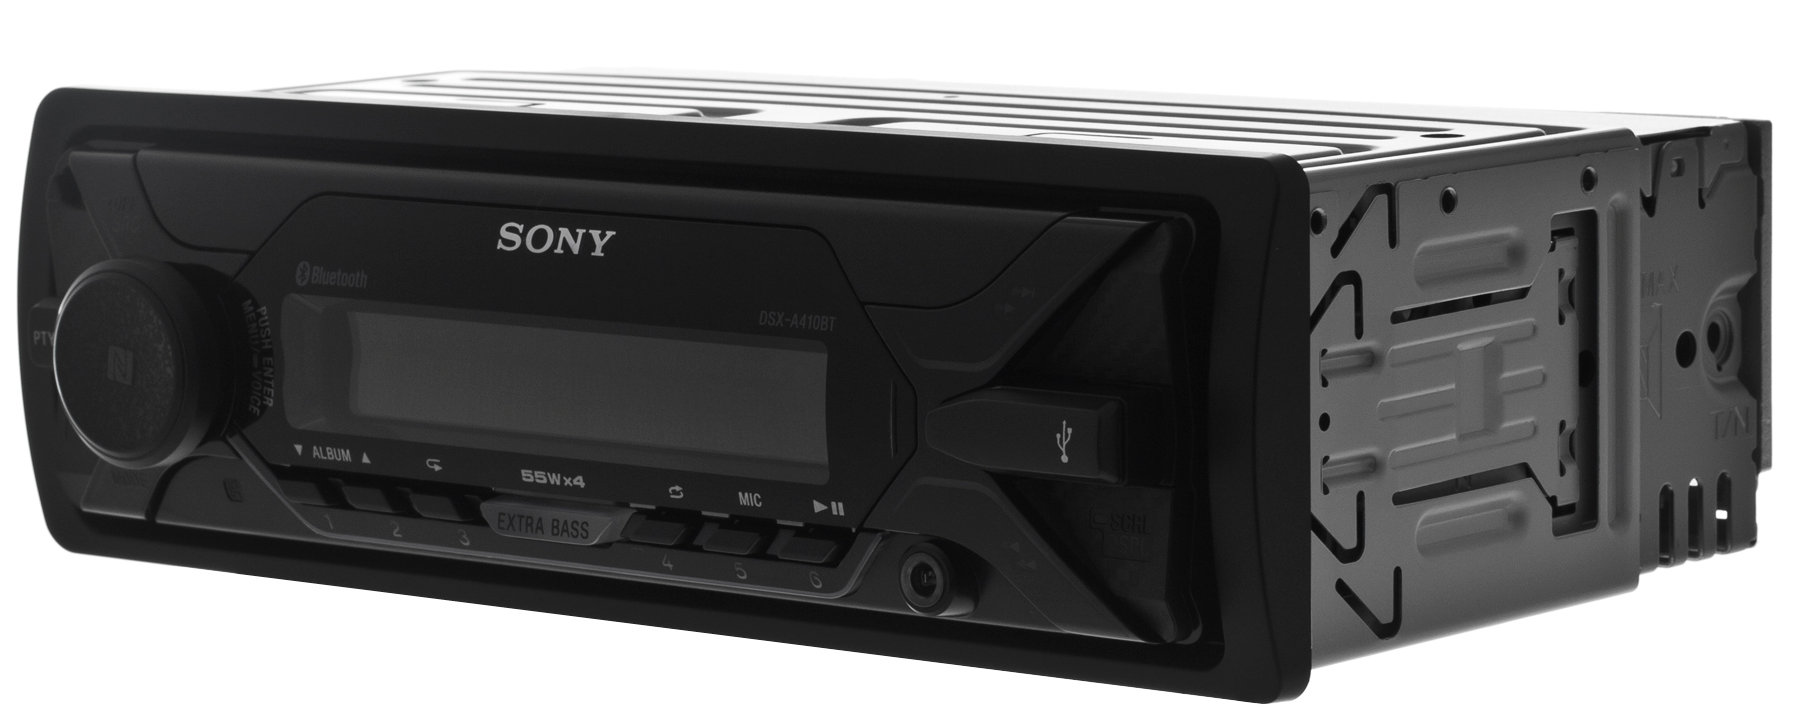 SONY DSX-A410BT Radio samochodowe - niskie ceny i opinie w Media Expert